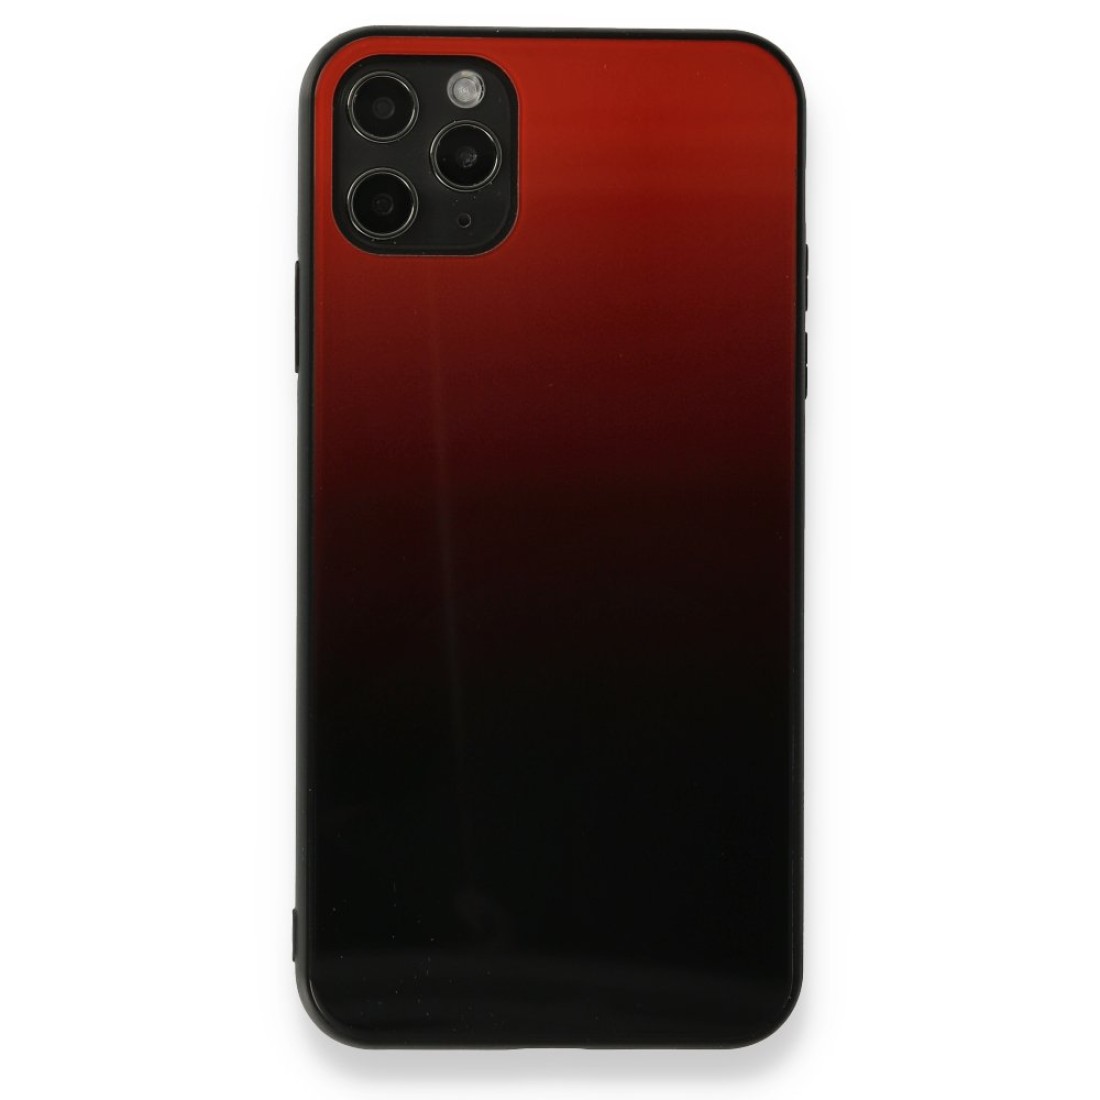 Apple iPhone 11 Pro Kılıf Grady Silikon - Kırmızı-Siyah